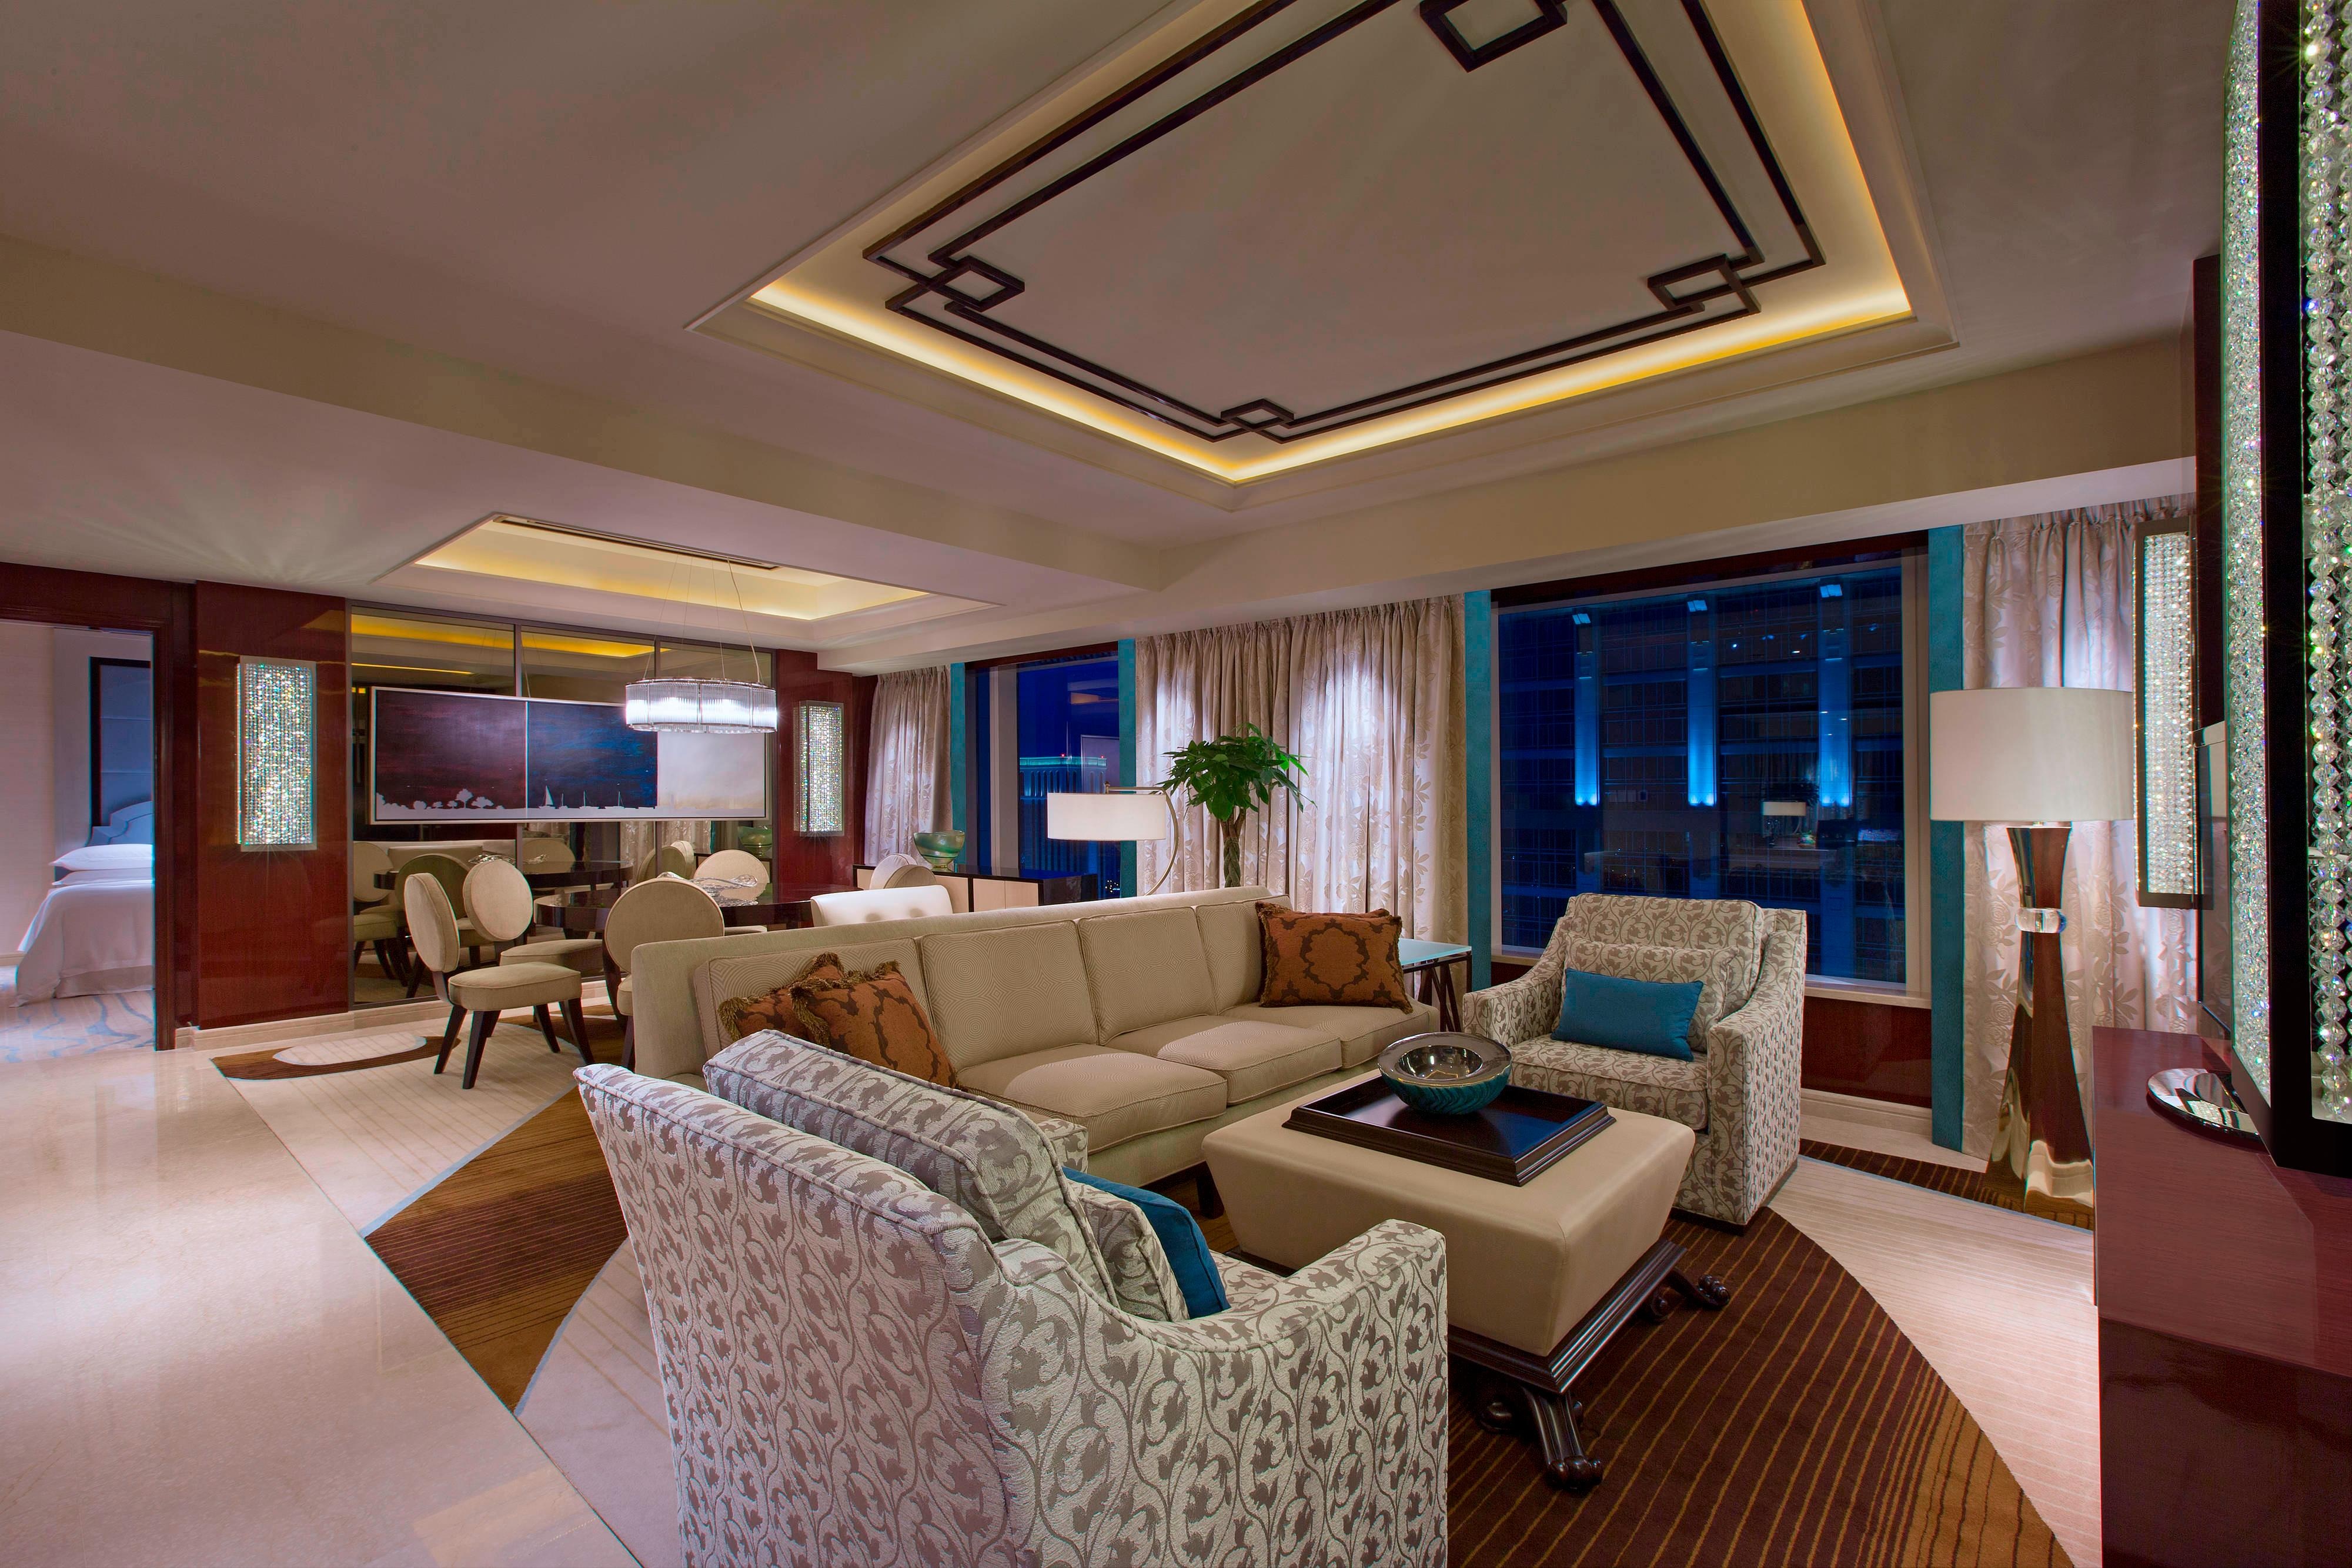 Ambassador Suite - Living Room